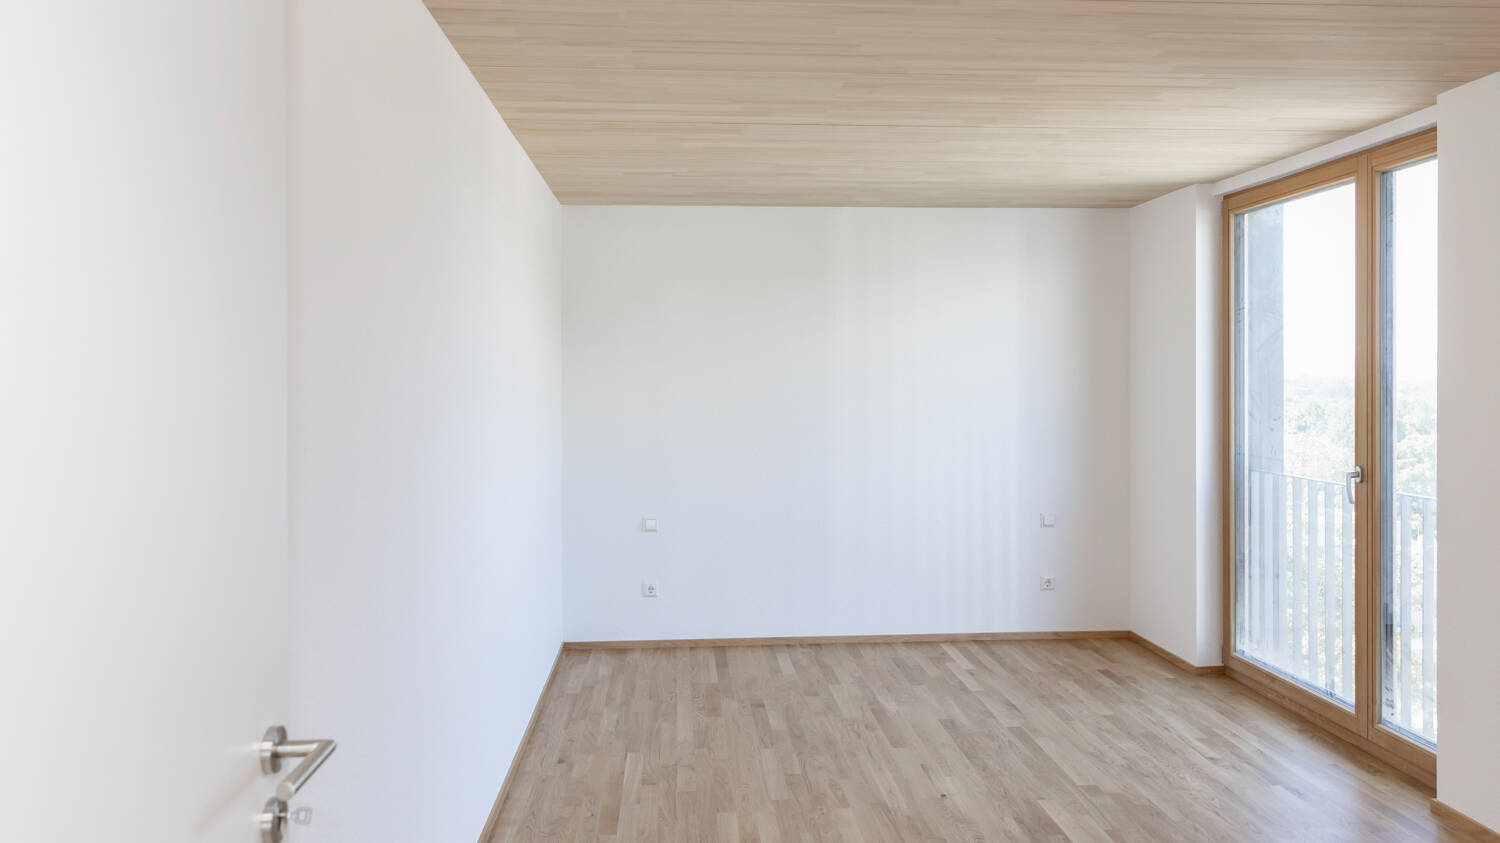 Die Räume strahlen durch die Kombination aus weißen Wänden und Decken sowie Böden in hellem Holz eine warme Atmosphäre aus. 